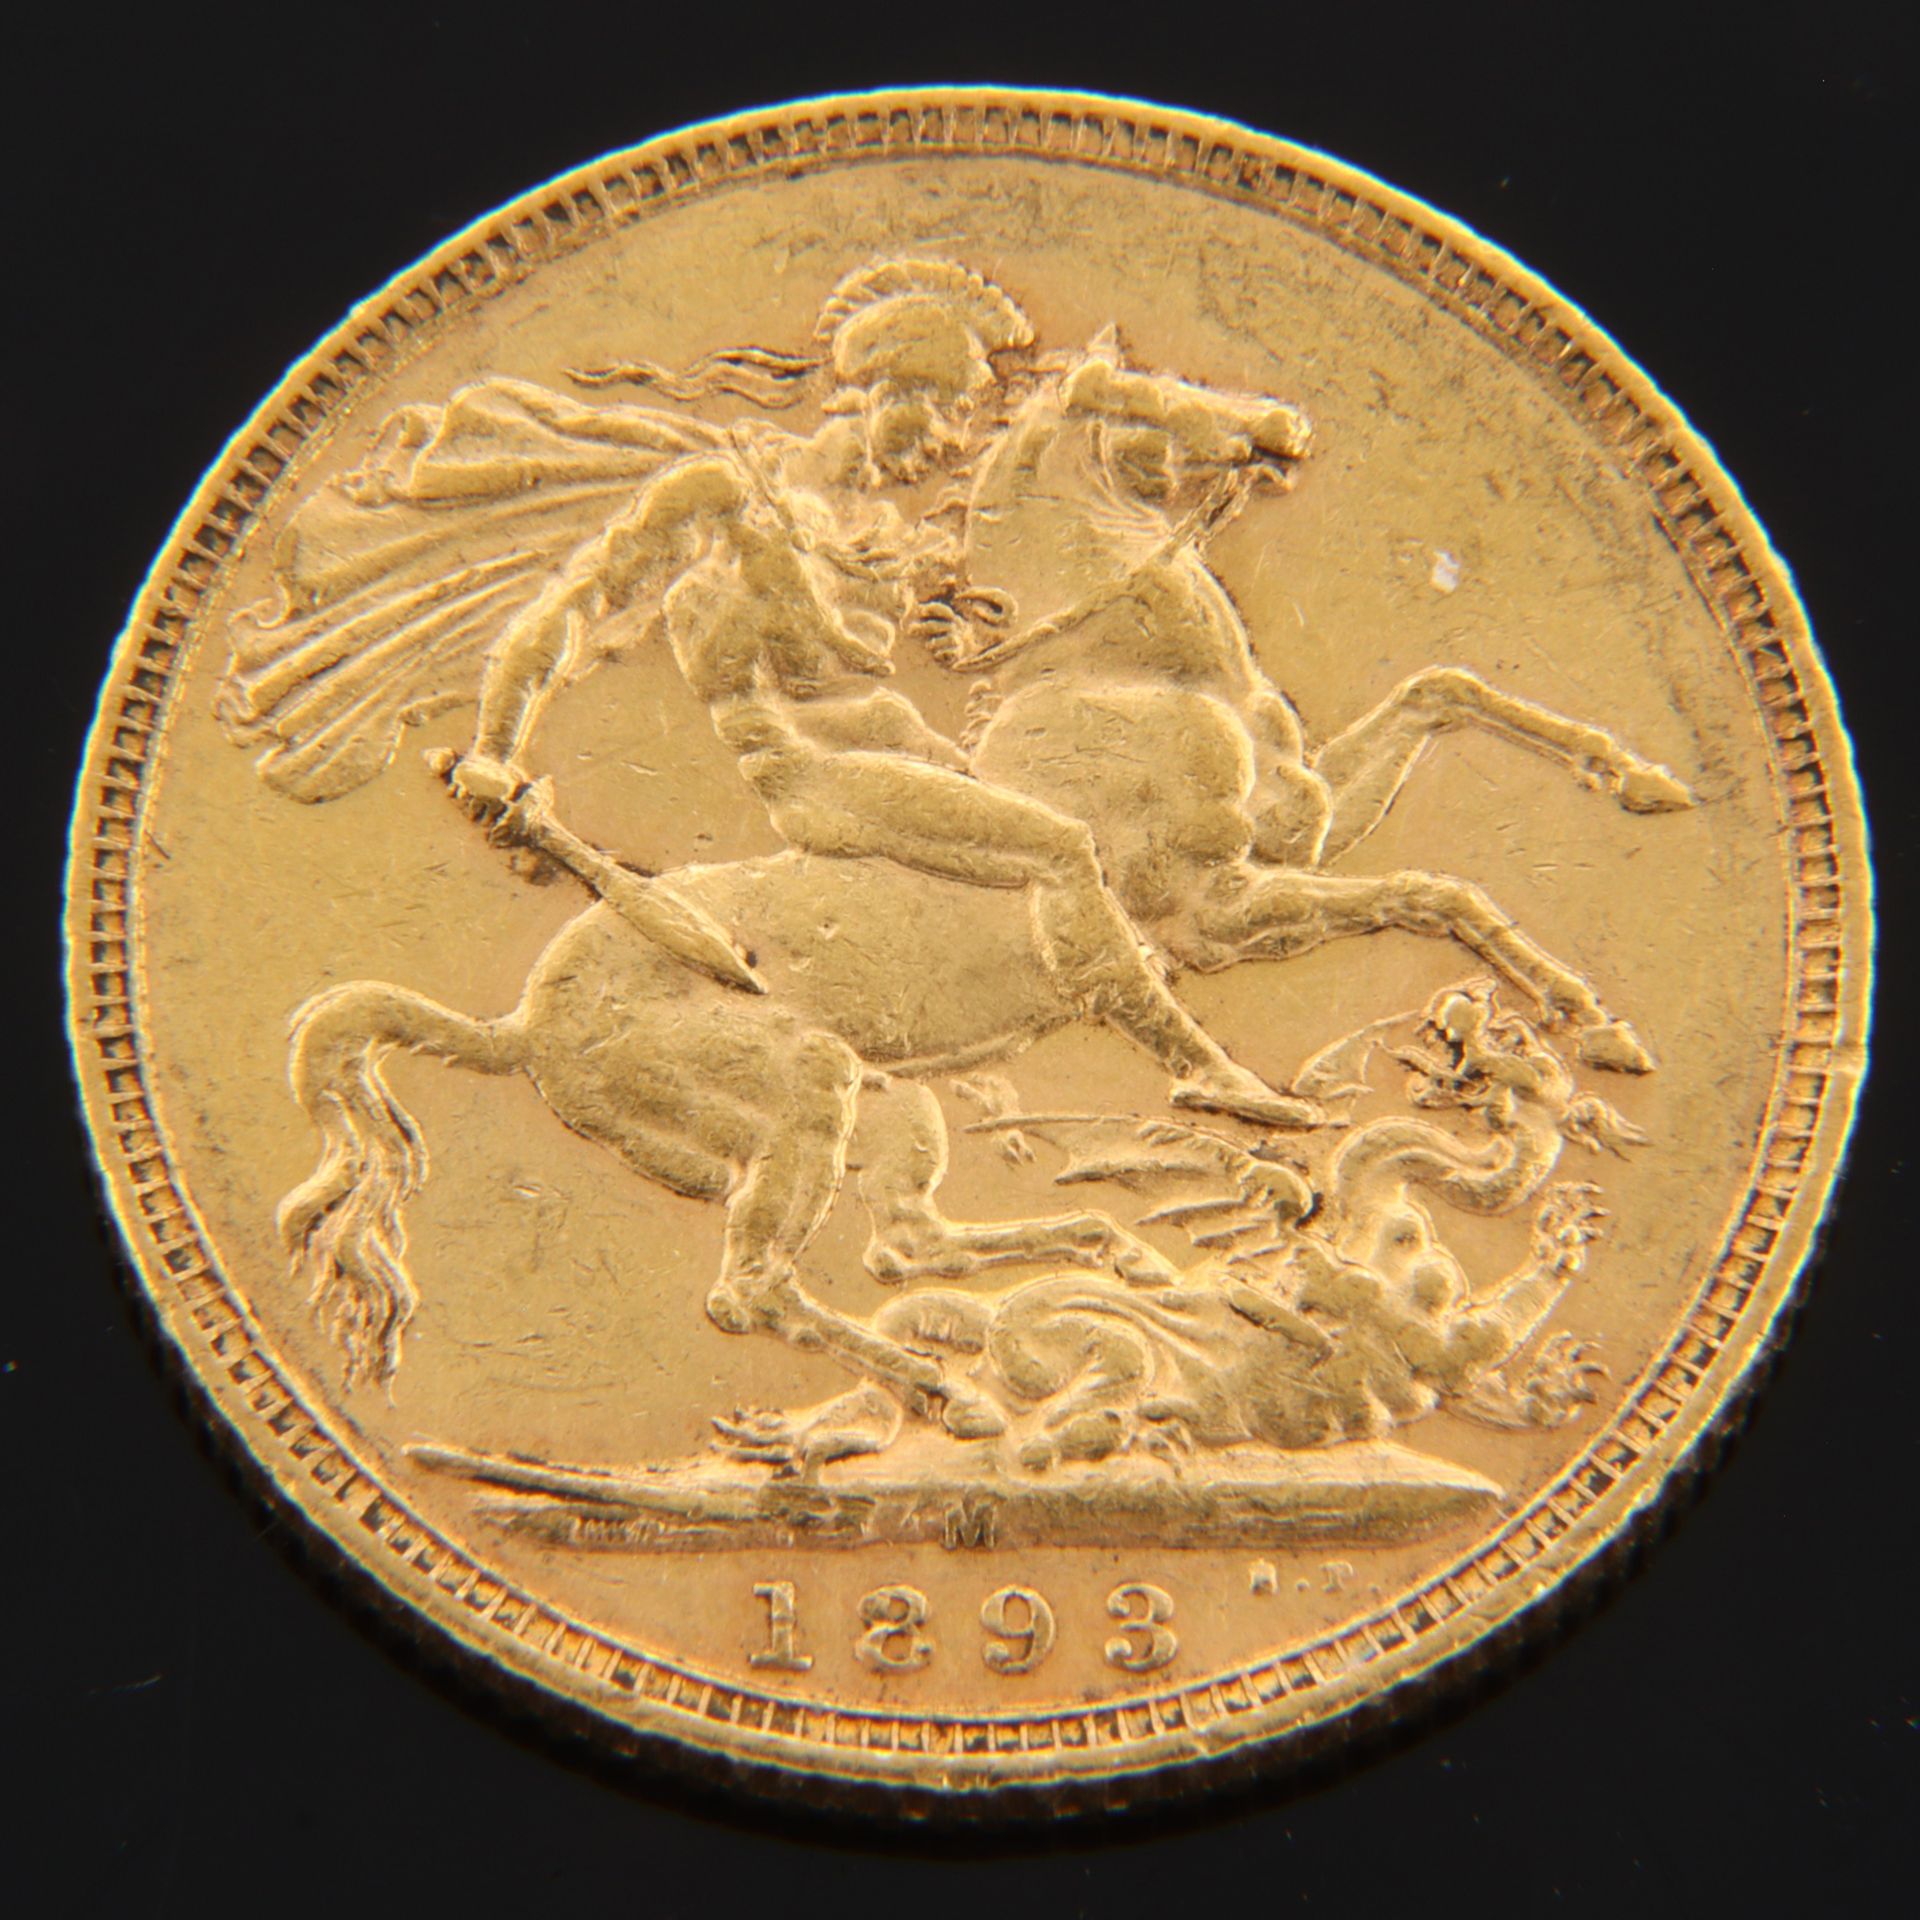 Goldmünze - 1 Pfund Victoria Jubilee Coinage Sovereign - Bild 2 aus 2